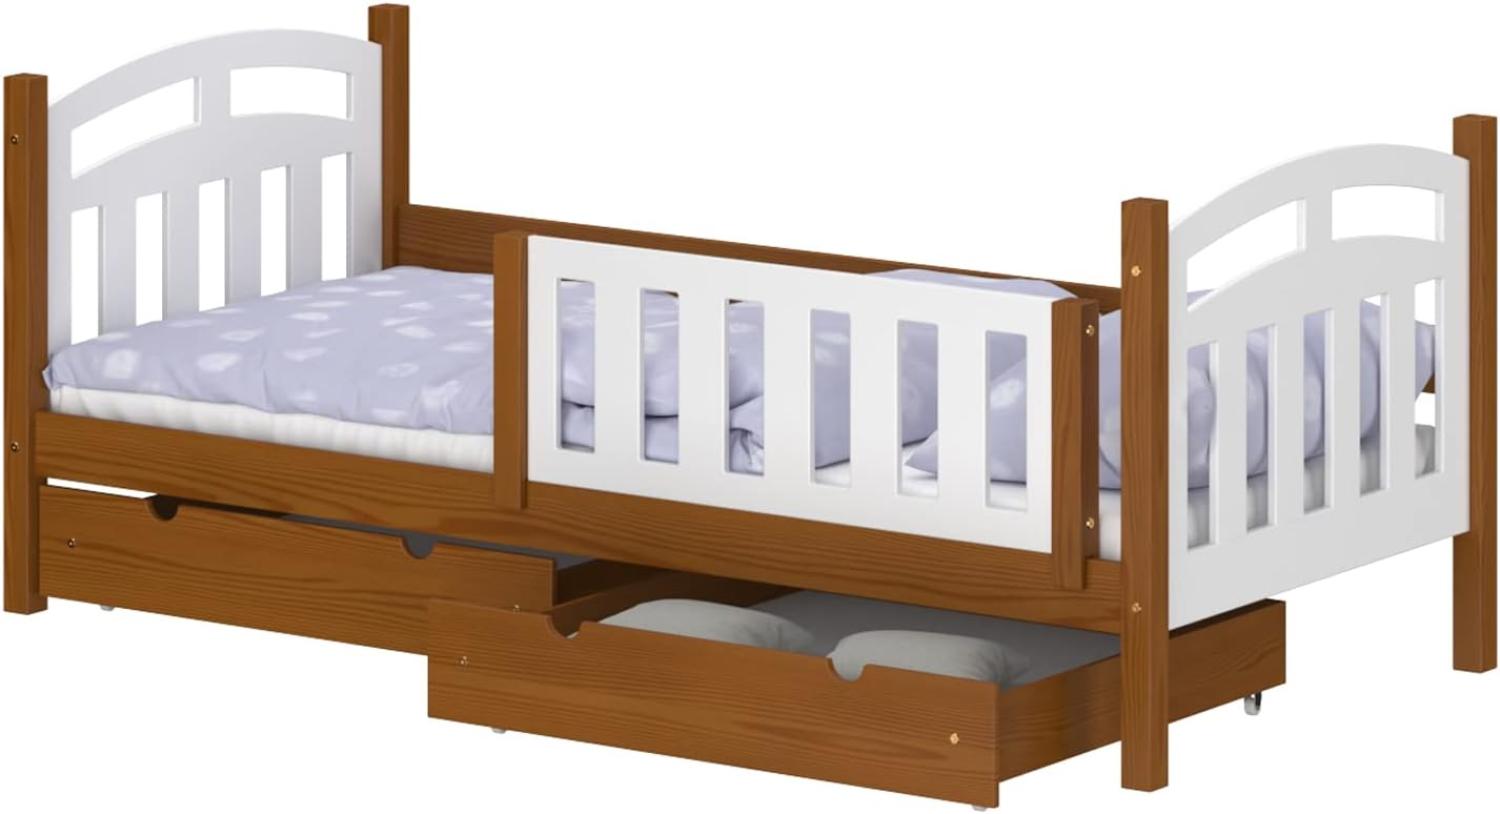 WNM Group Kinderbett mit Rausfallschutz Suzie - Jugenbett aus Massivholz - Bett mit 2 Schubladen für Mädchen und Jungen - Funktionsbett 190x90 cm - Braun Bild 1